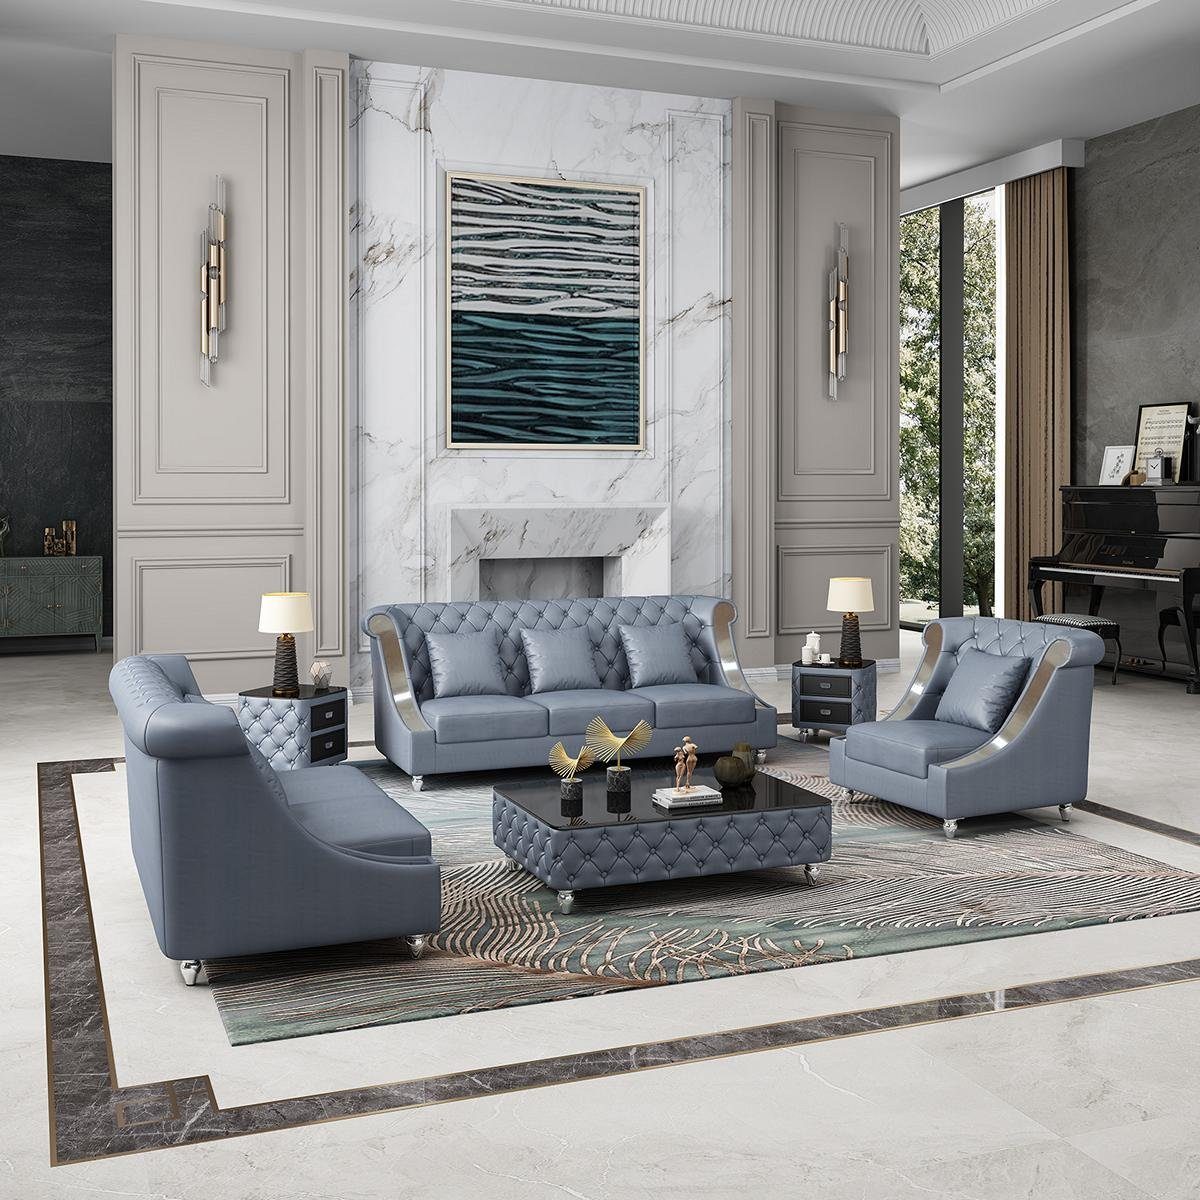 JVmoebel Wohnzimmer-Set, Ledersofa Couch Wohnlandschaft Garnitur Design Modern 3 1 Sitzer Blau